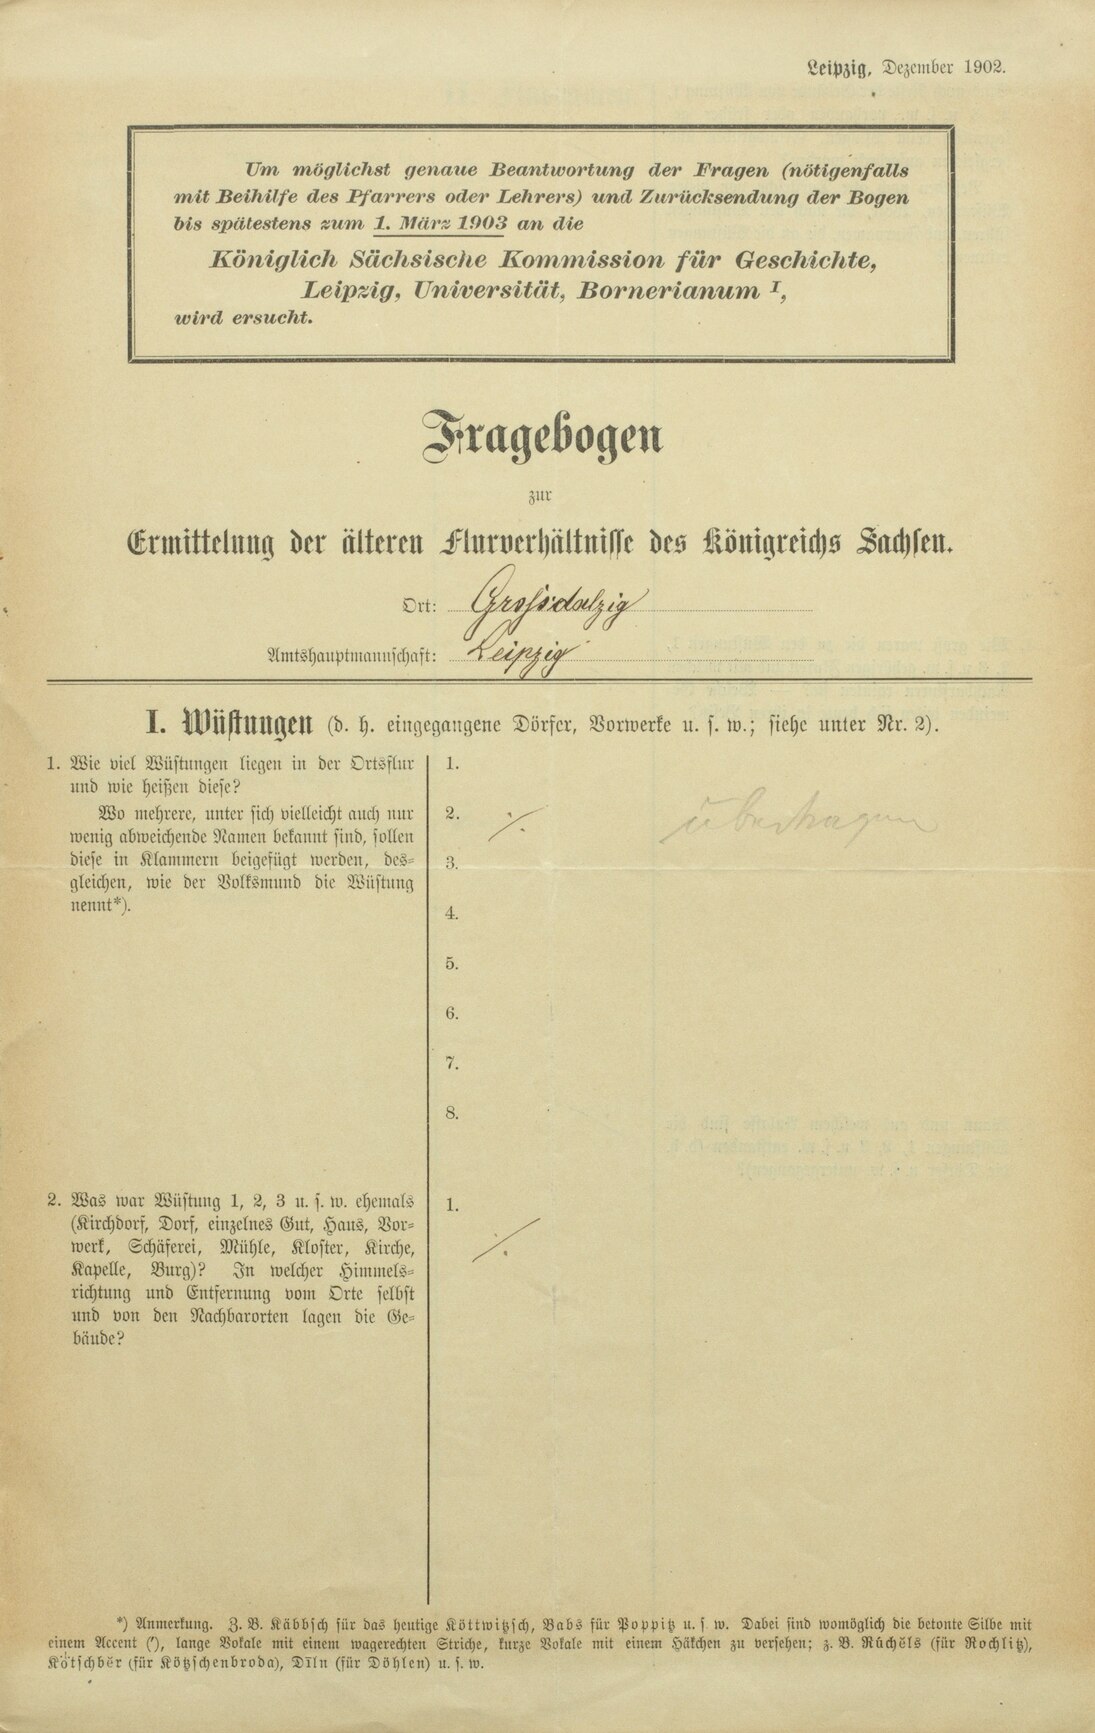 Fragebogen zur Ermittlung der älteren Flurverhältnisse in Sachsen, 1902